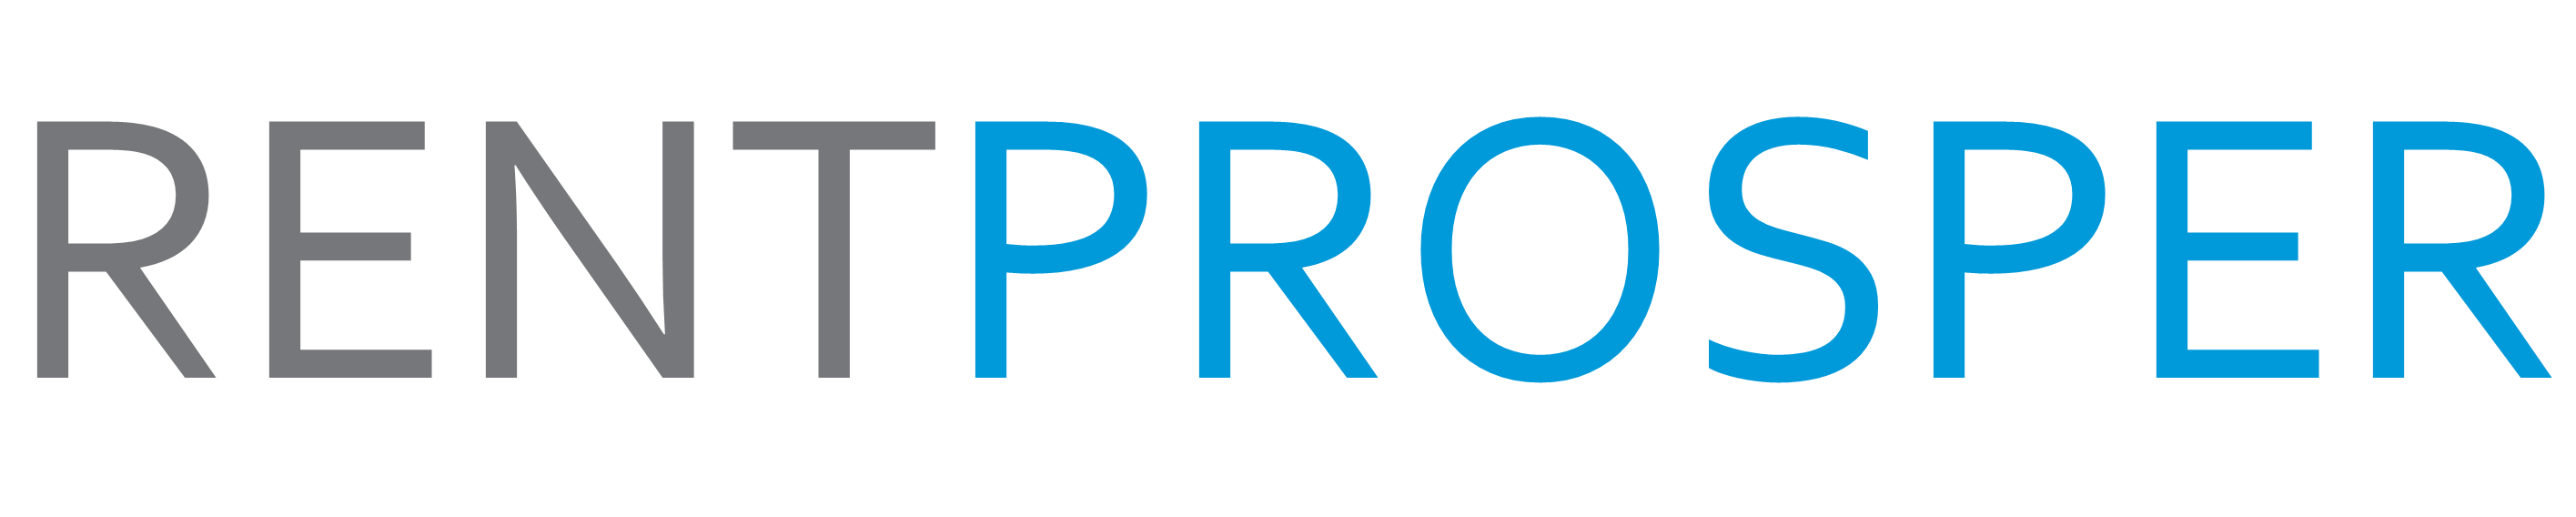 Rent Prosper logo